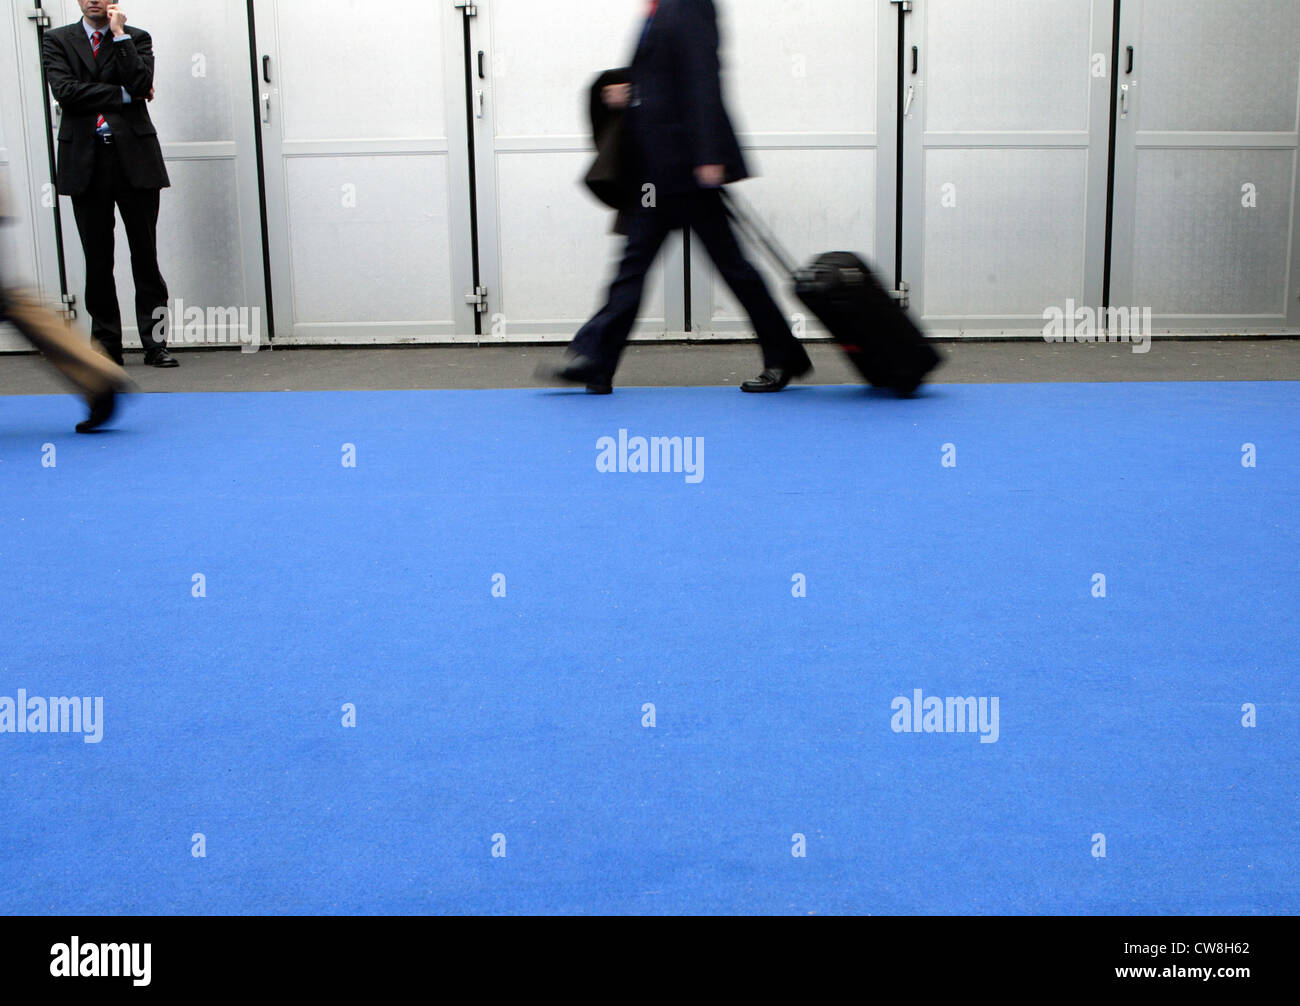 La gente de negocios de caminar sobre una alfombra azul Foto de stock